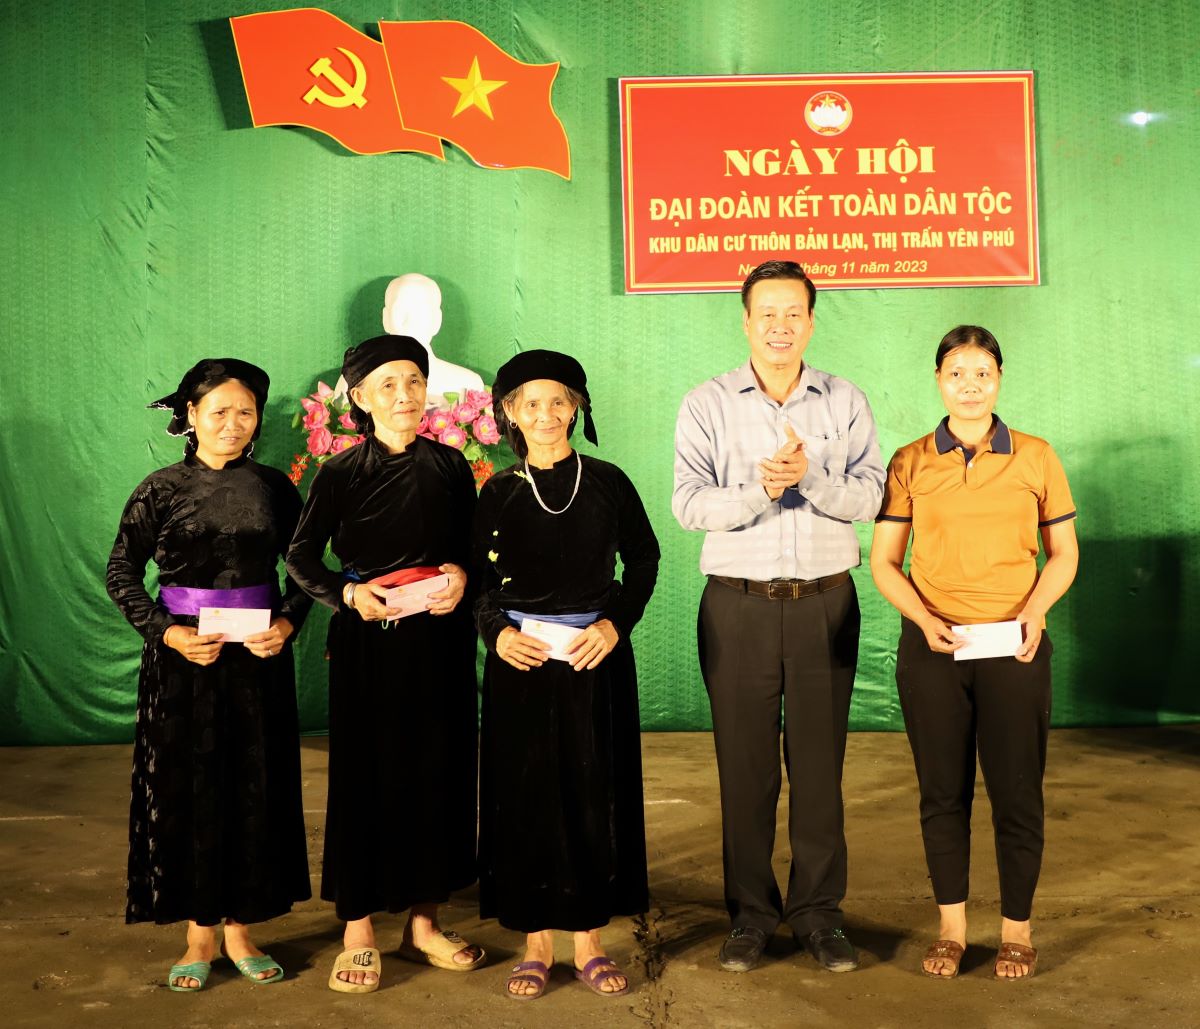 Chủ tịch UBND tỉnh Nguyễn Văn Sơn tặng quà động viên các hộ nghèo và cận nghèo thôn Bản Lạn.